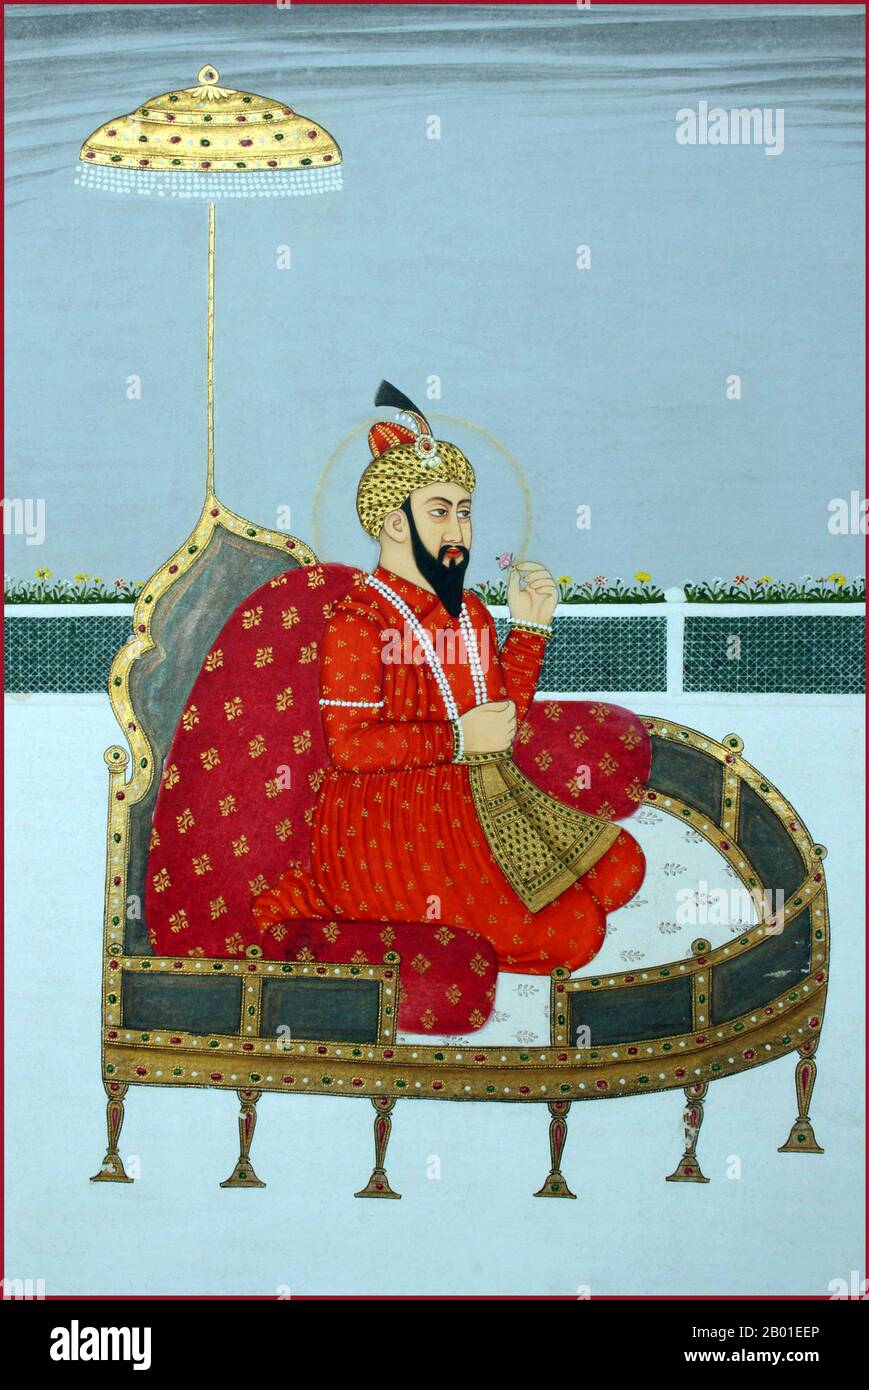 Indien: Zahir ud-din Muhammad Babur (1483-1531) der erste Mogul-Kaiser. Miniaturmalerei, ca. 18. Jahrhundert. Zahir-din Muhammad Babur war ein muslimischer Eroberer aus Zentralasien, dem es nach einer Reihe von Rückschlägen endlich gelungen ist, die Grundlage für die Mogul-Dynastie Südasiens zu schaffen. Er war ein direkter Nachkomme von Timur durch seinen Vater und ein Nachkomme von Dschingis Khan durch seine Mutter. Babur identifizierte seine Abstammung als Timurid und Chaghatay-Turkic, während seine Herkunft, sein Milieu, seine Ausbildung und seine Kultur von der persischen Kultur durchdrungen waren. Stockfoto